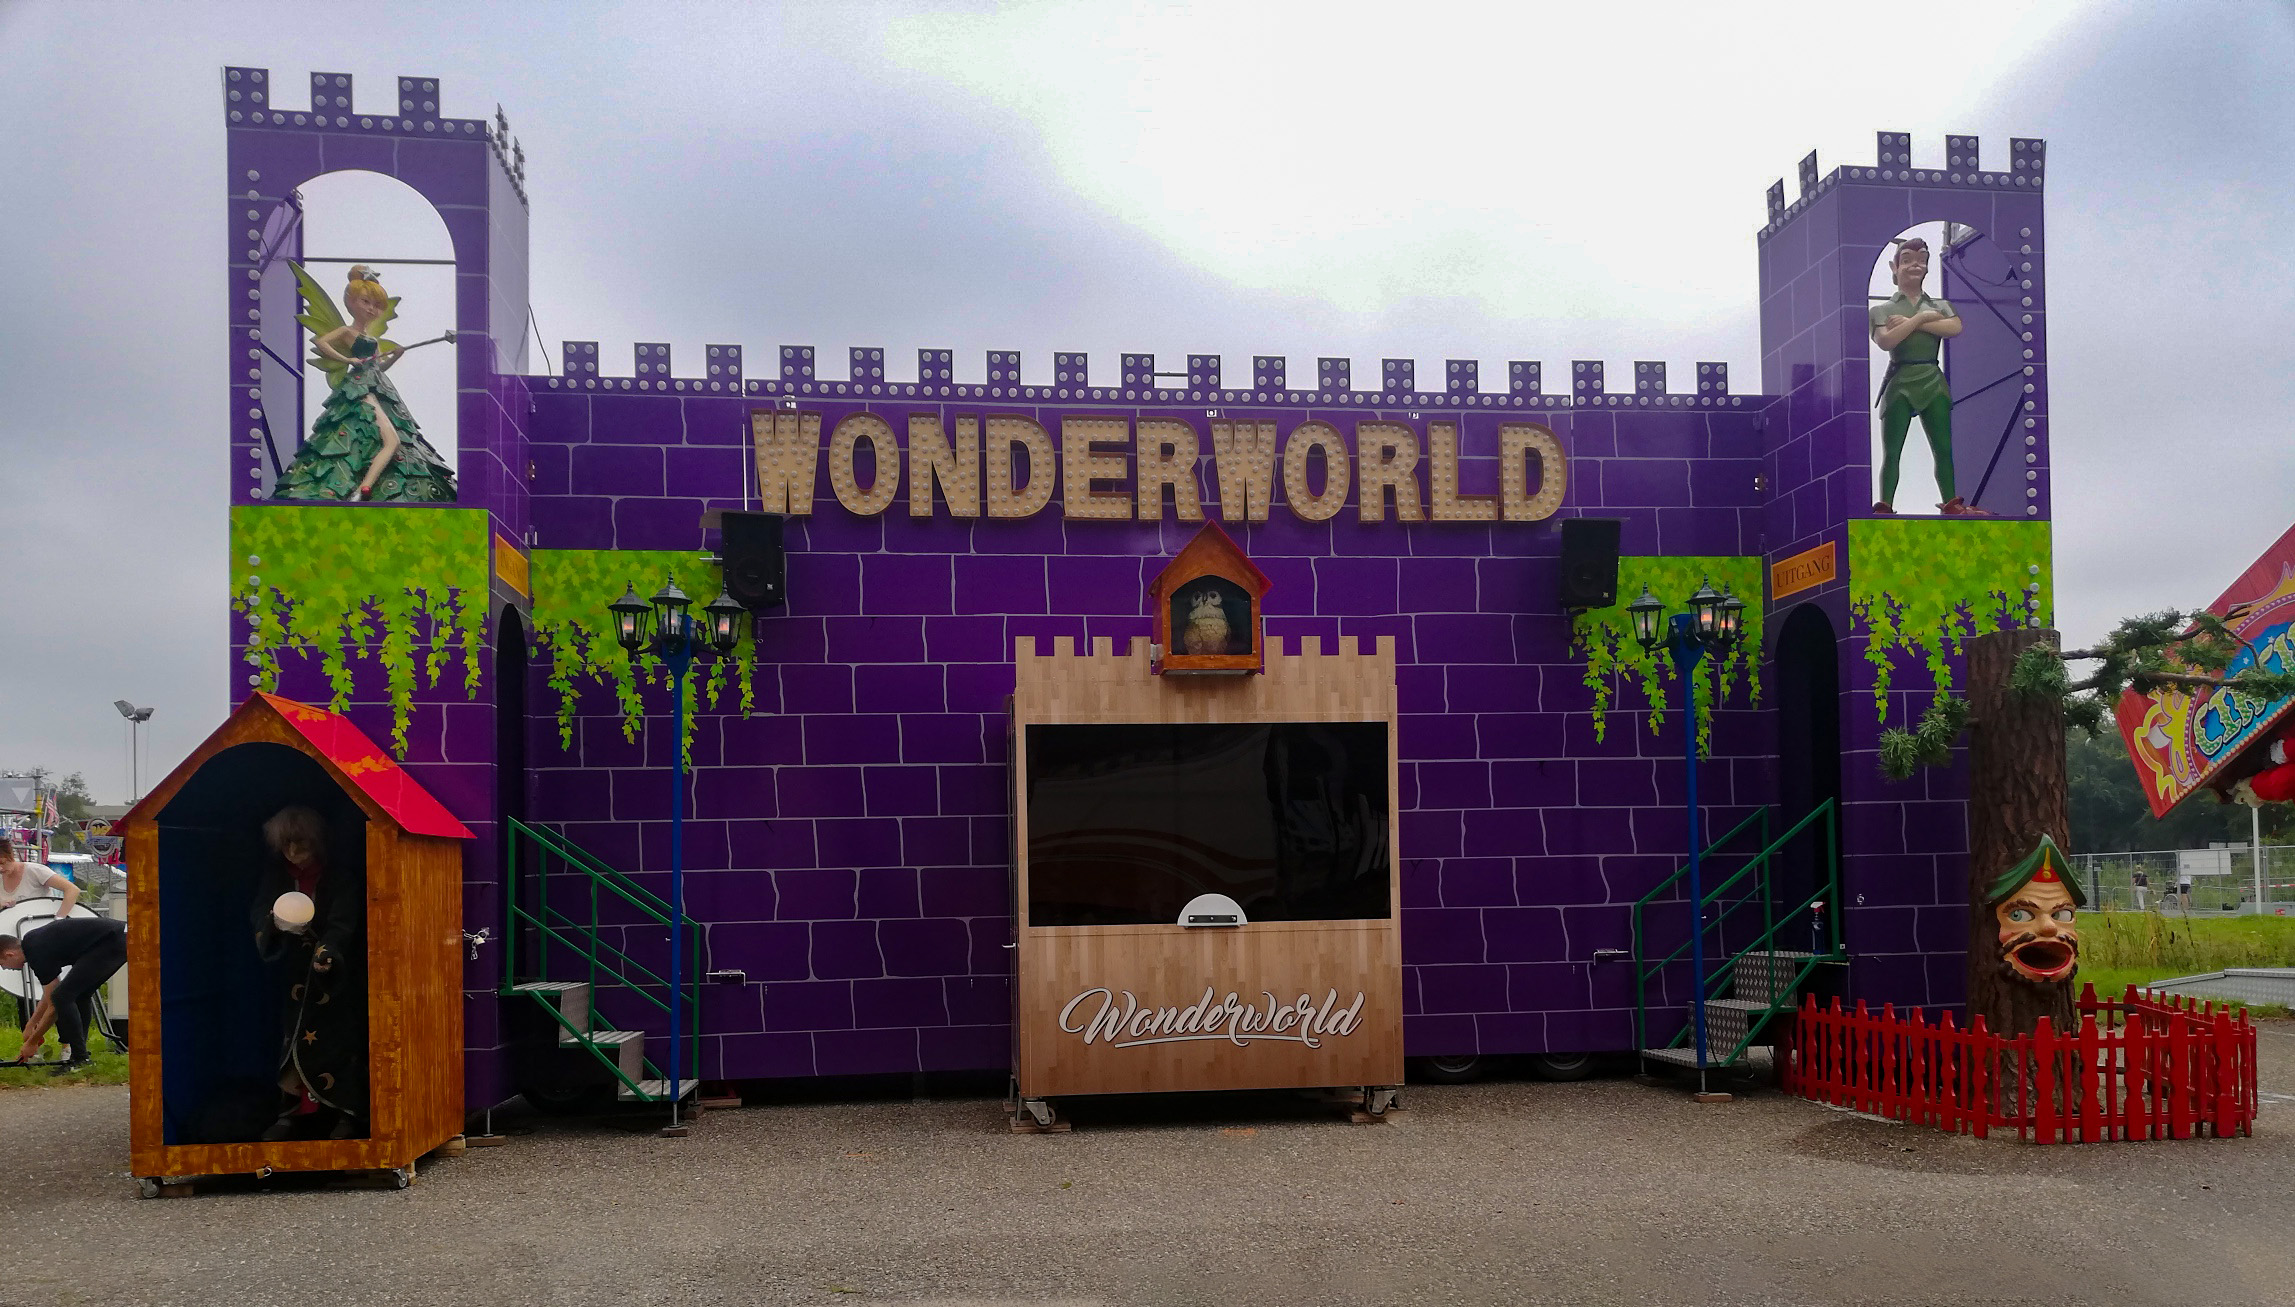 Wonder world is de nieuwste attractie van de kermis en verhuur.